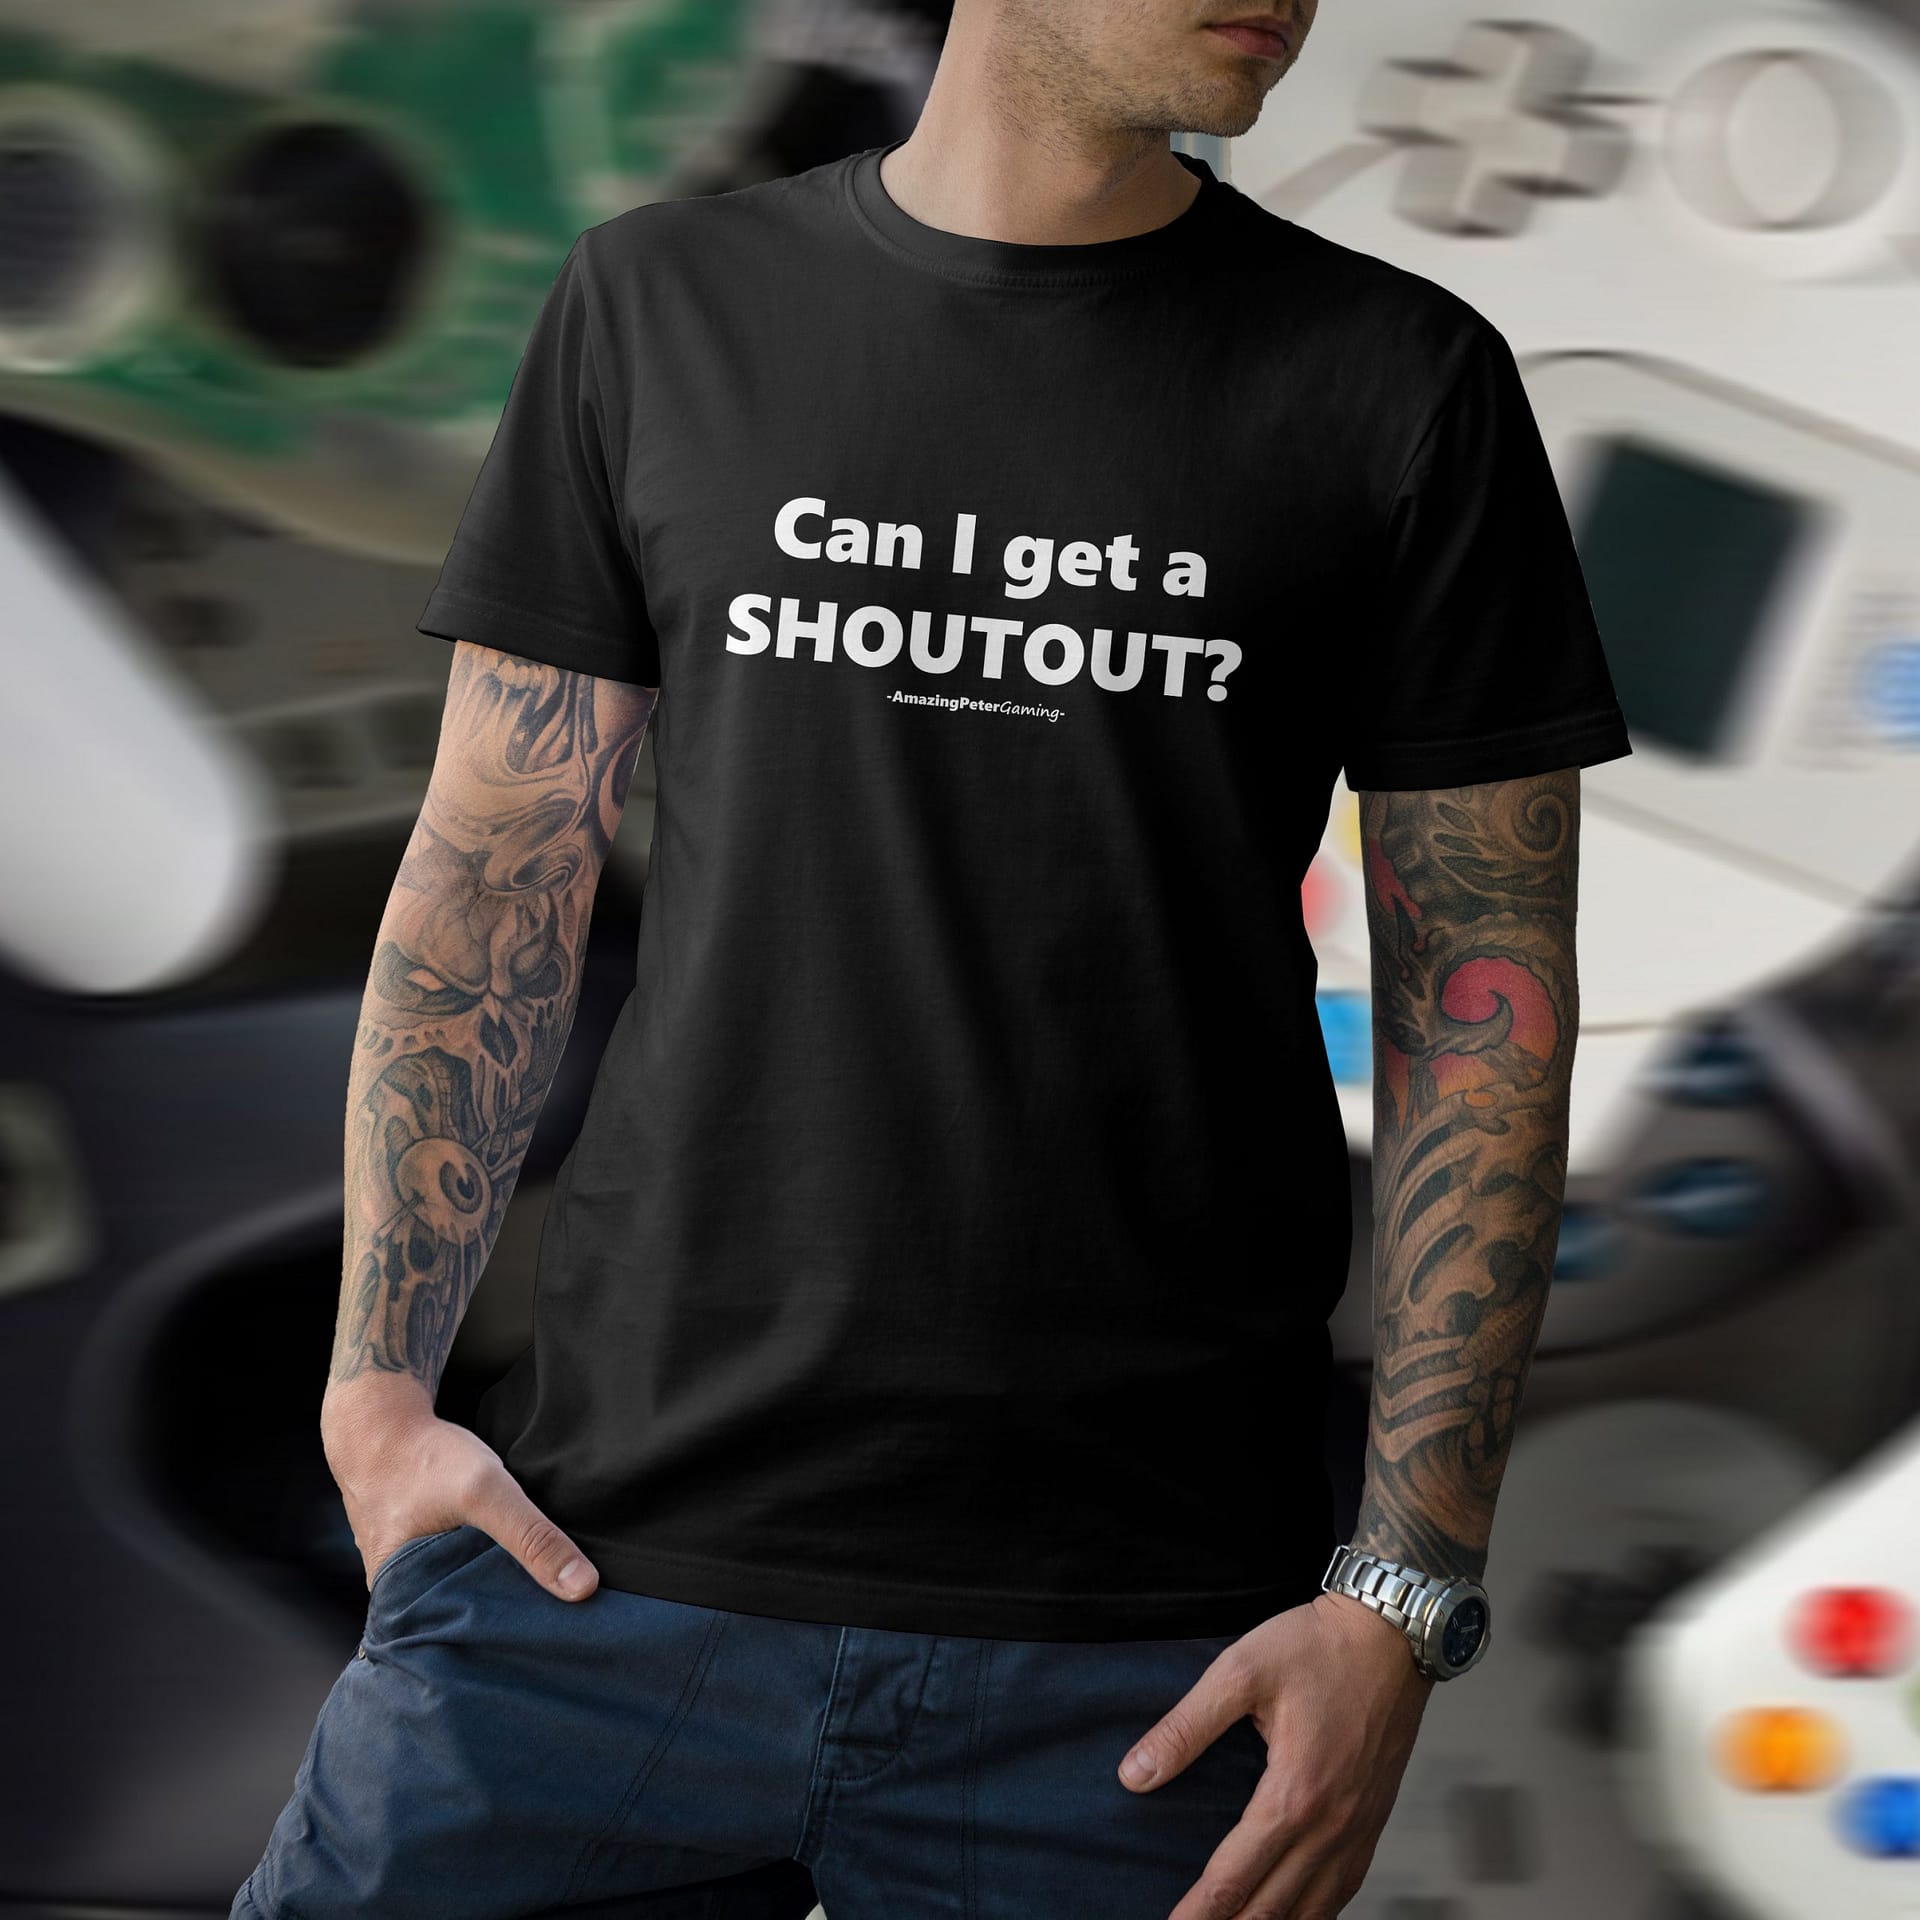 APG - T-shirt Black, Can I Get A SHOUTOUT? | Artist Fanshop